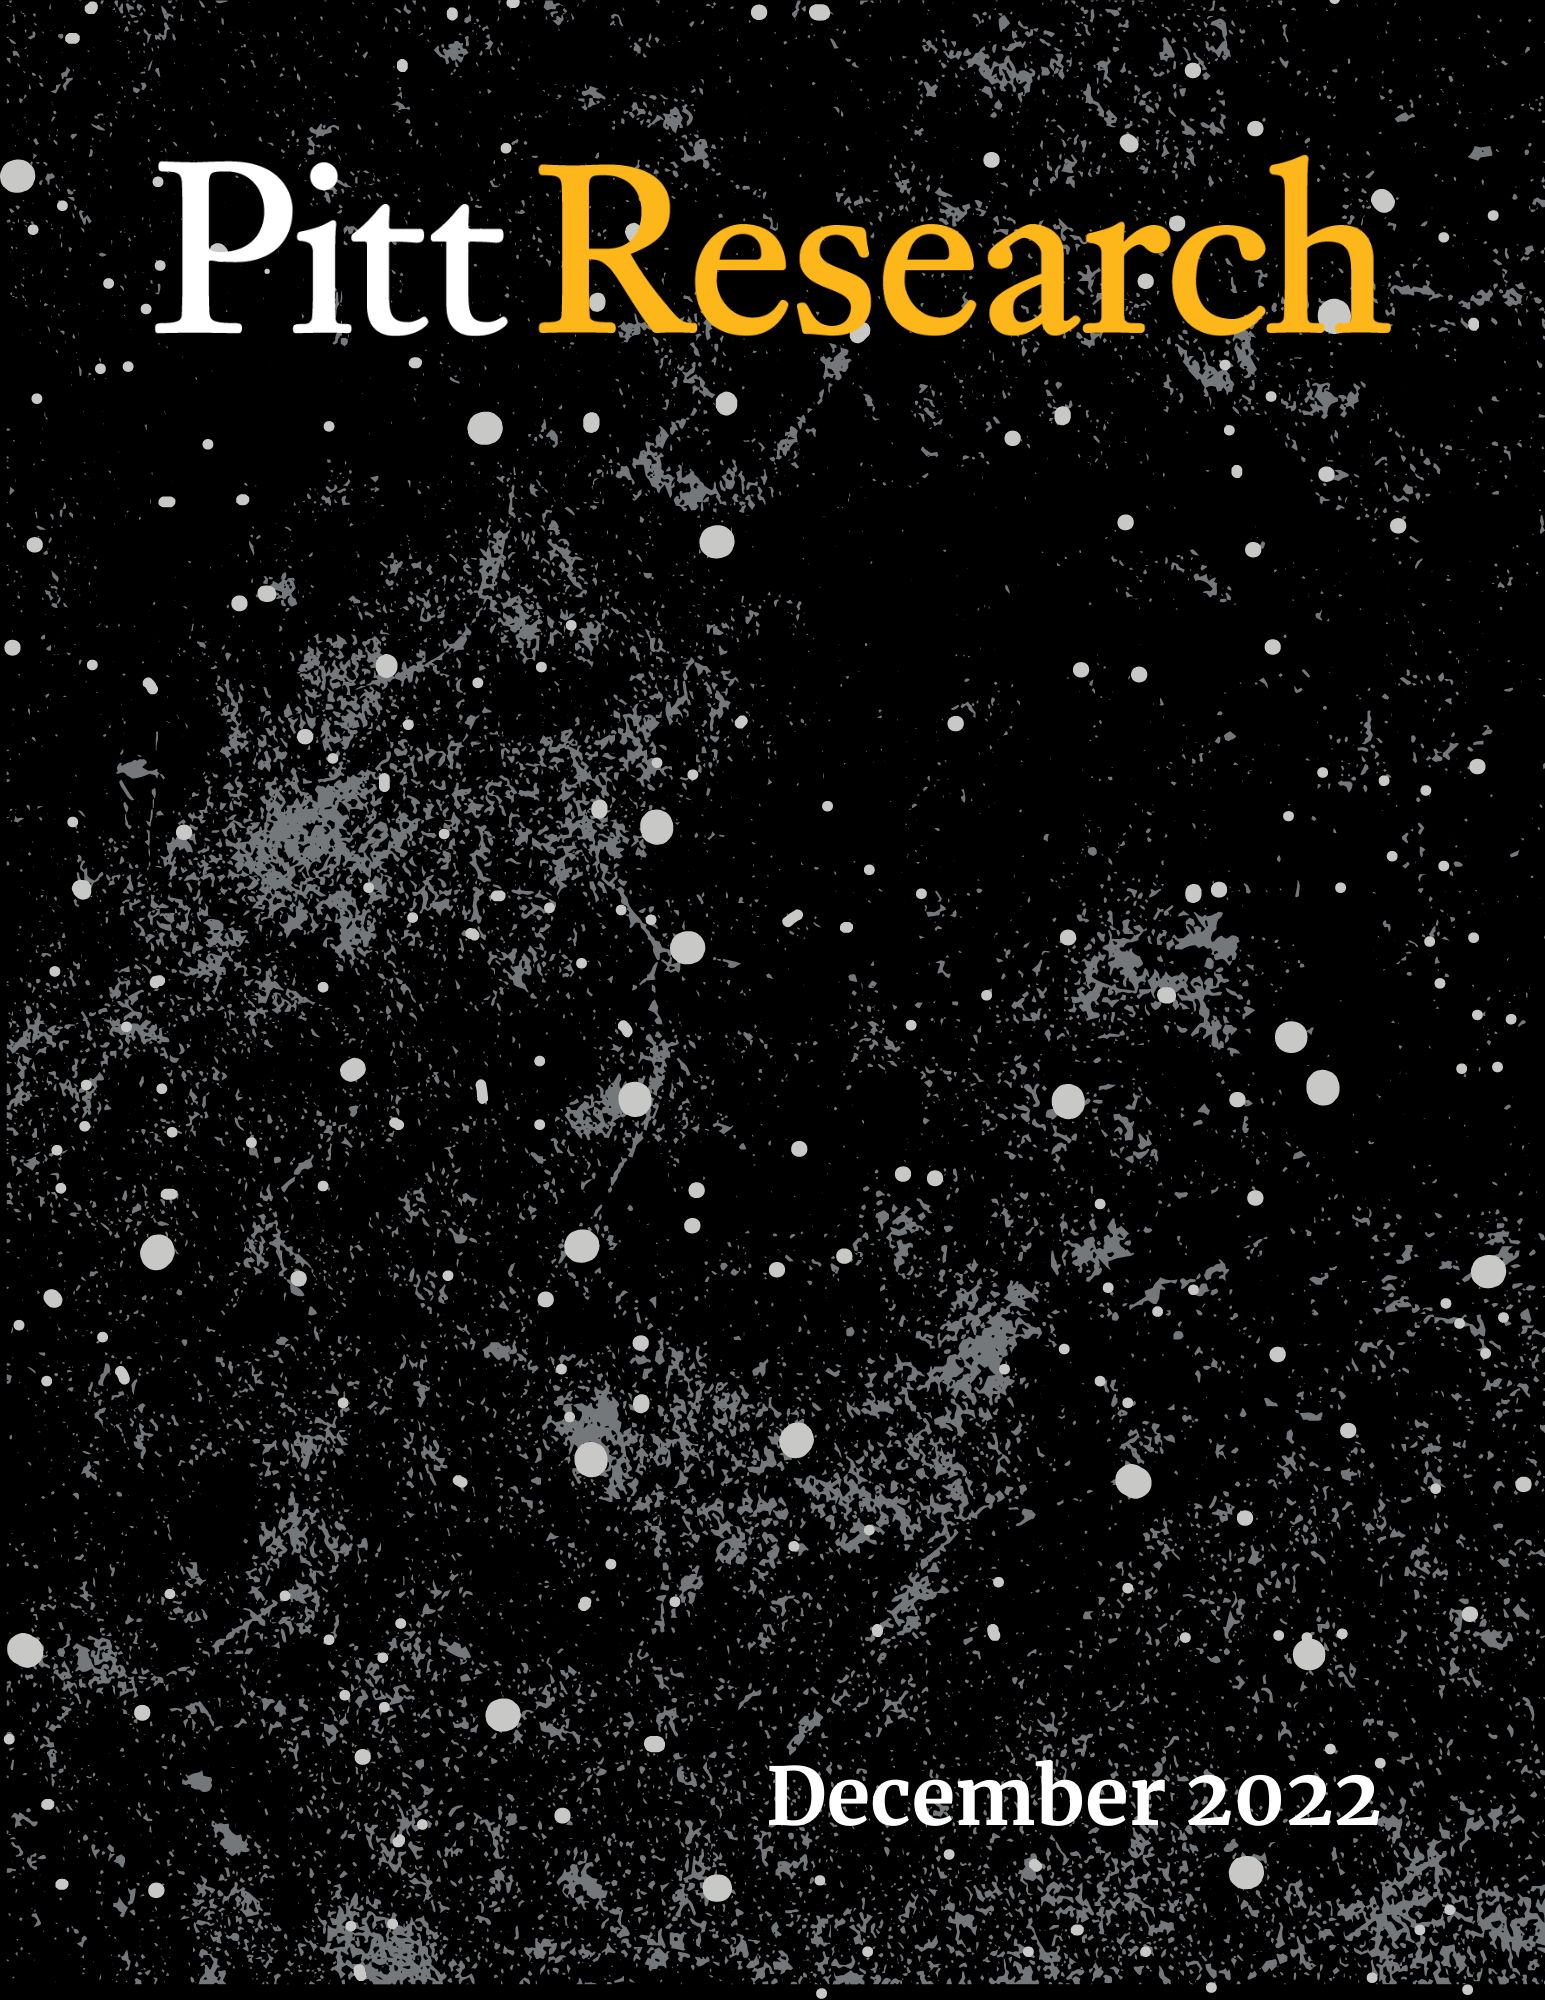 Pitt Research Newsletter for December 2022